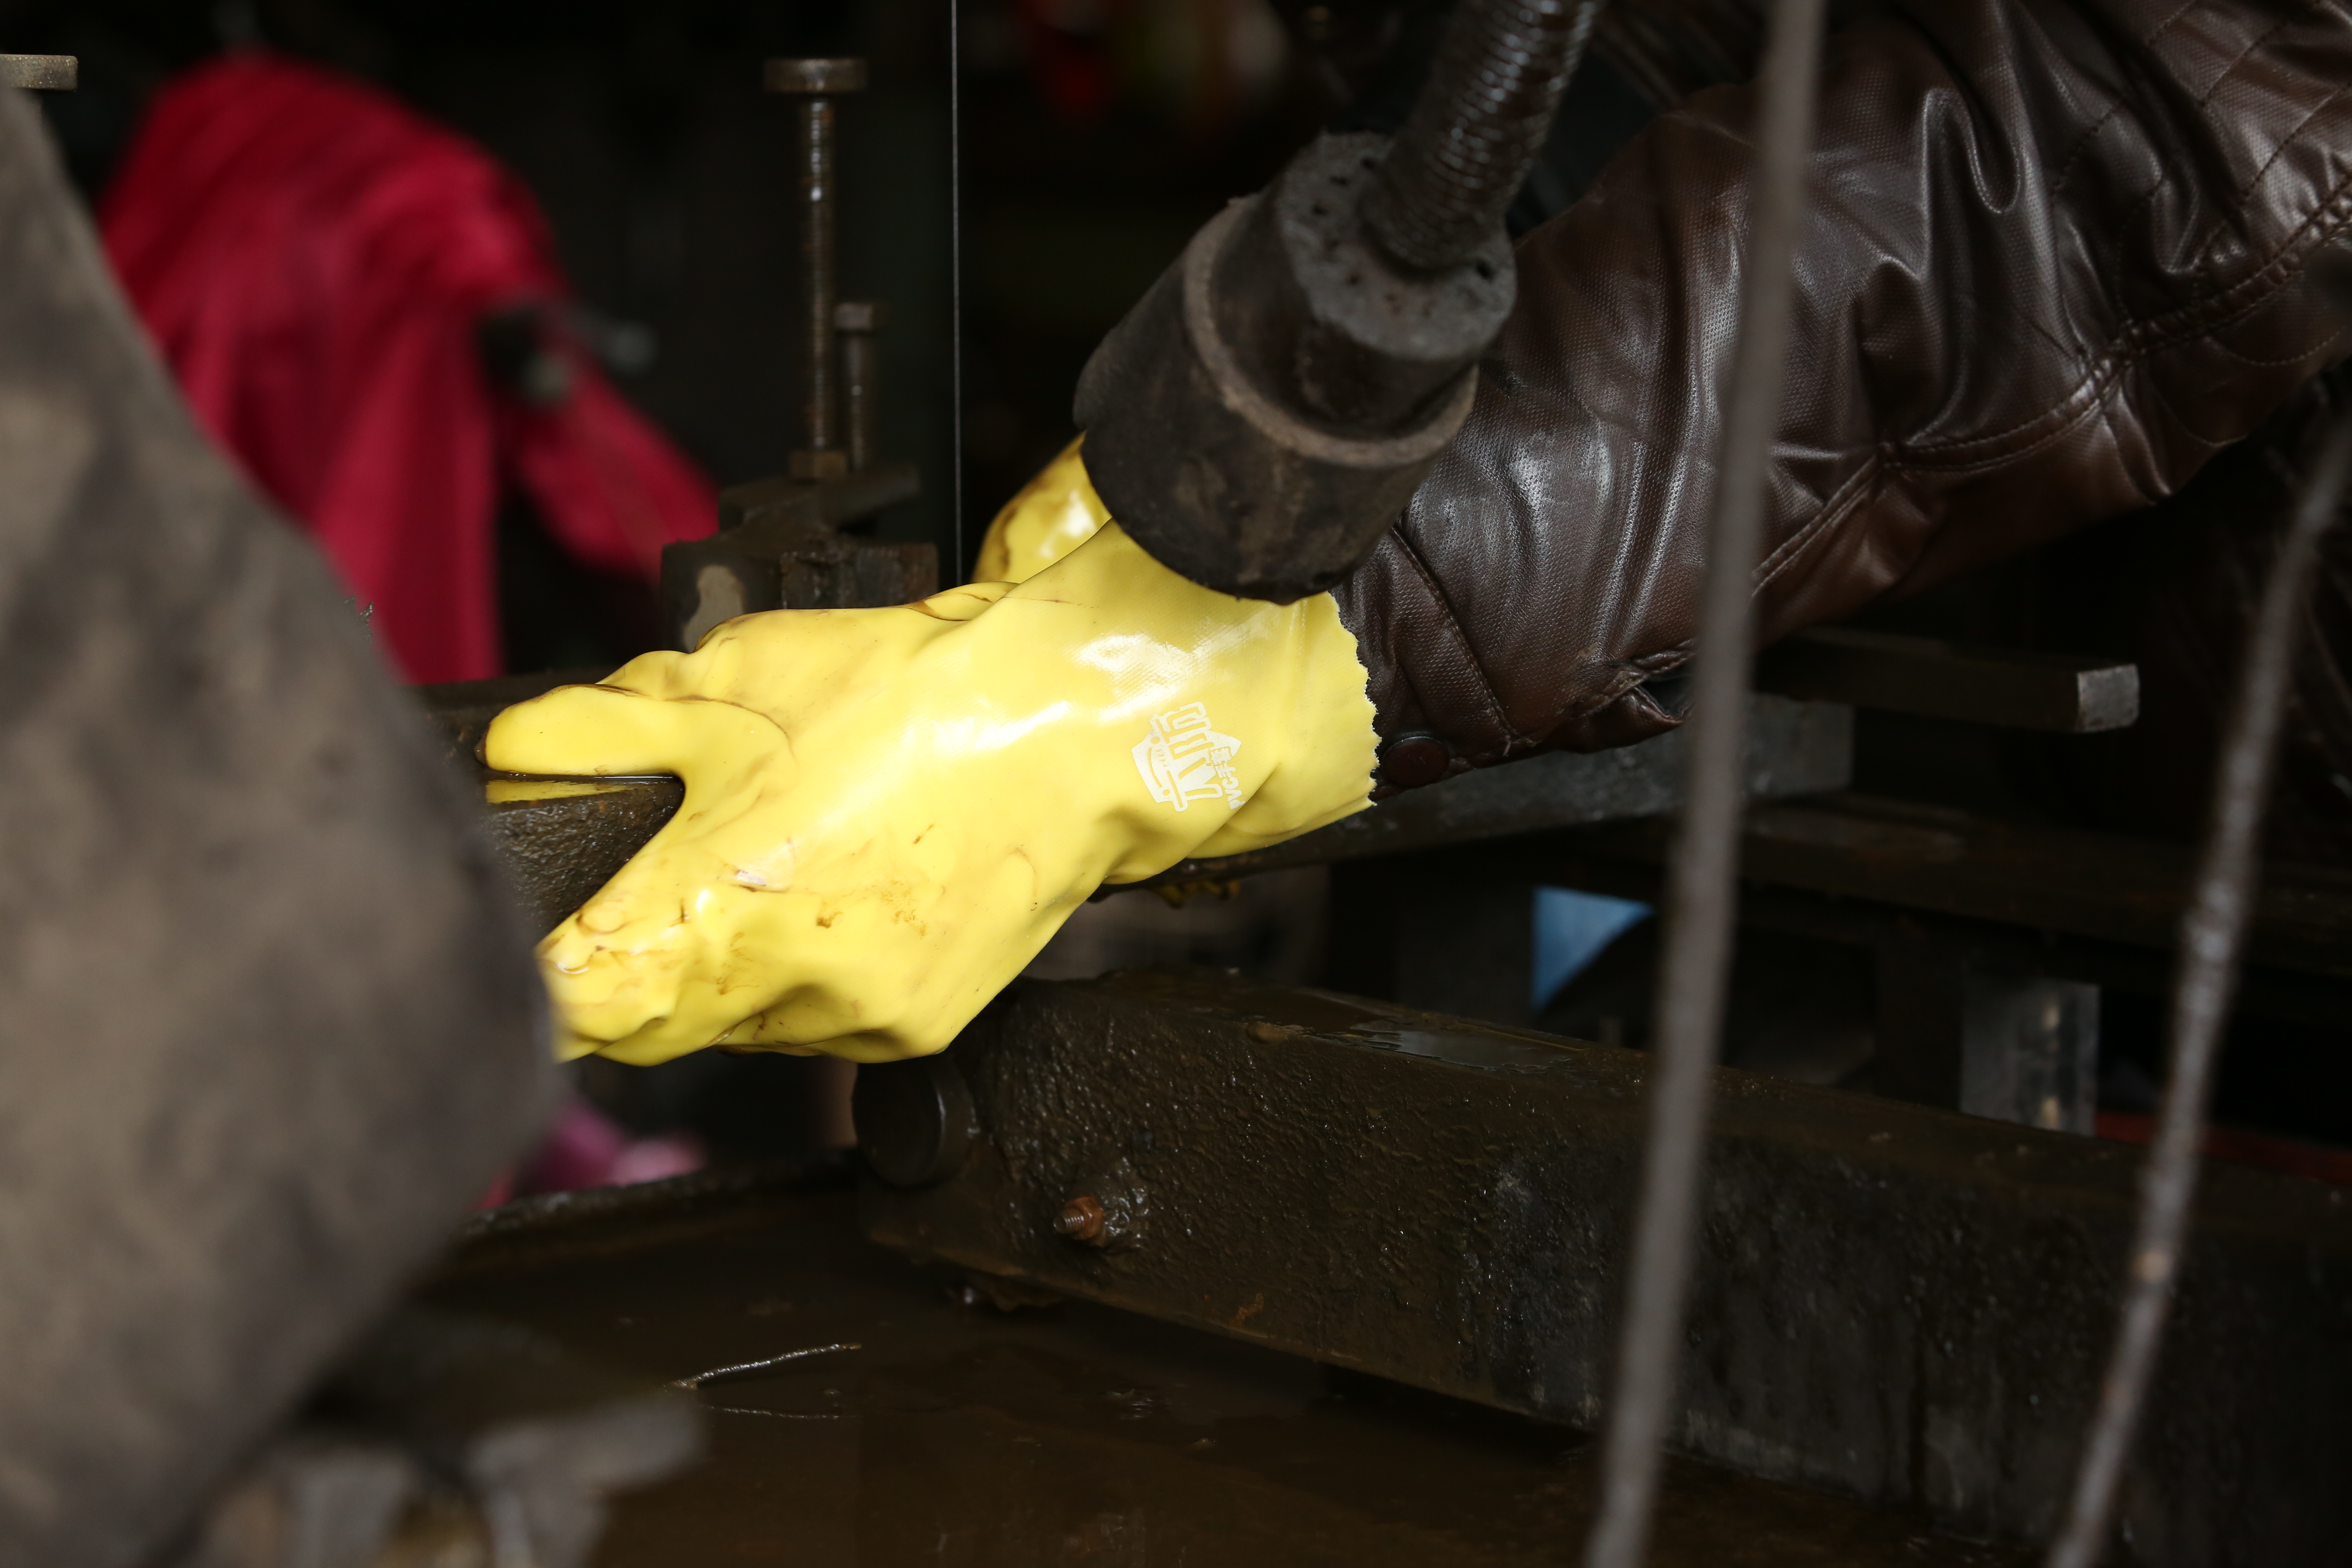 Κίτρινο PVC επικαλυμμένα γάντια βαμβακιού